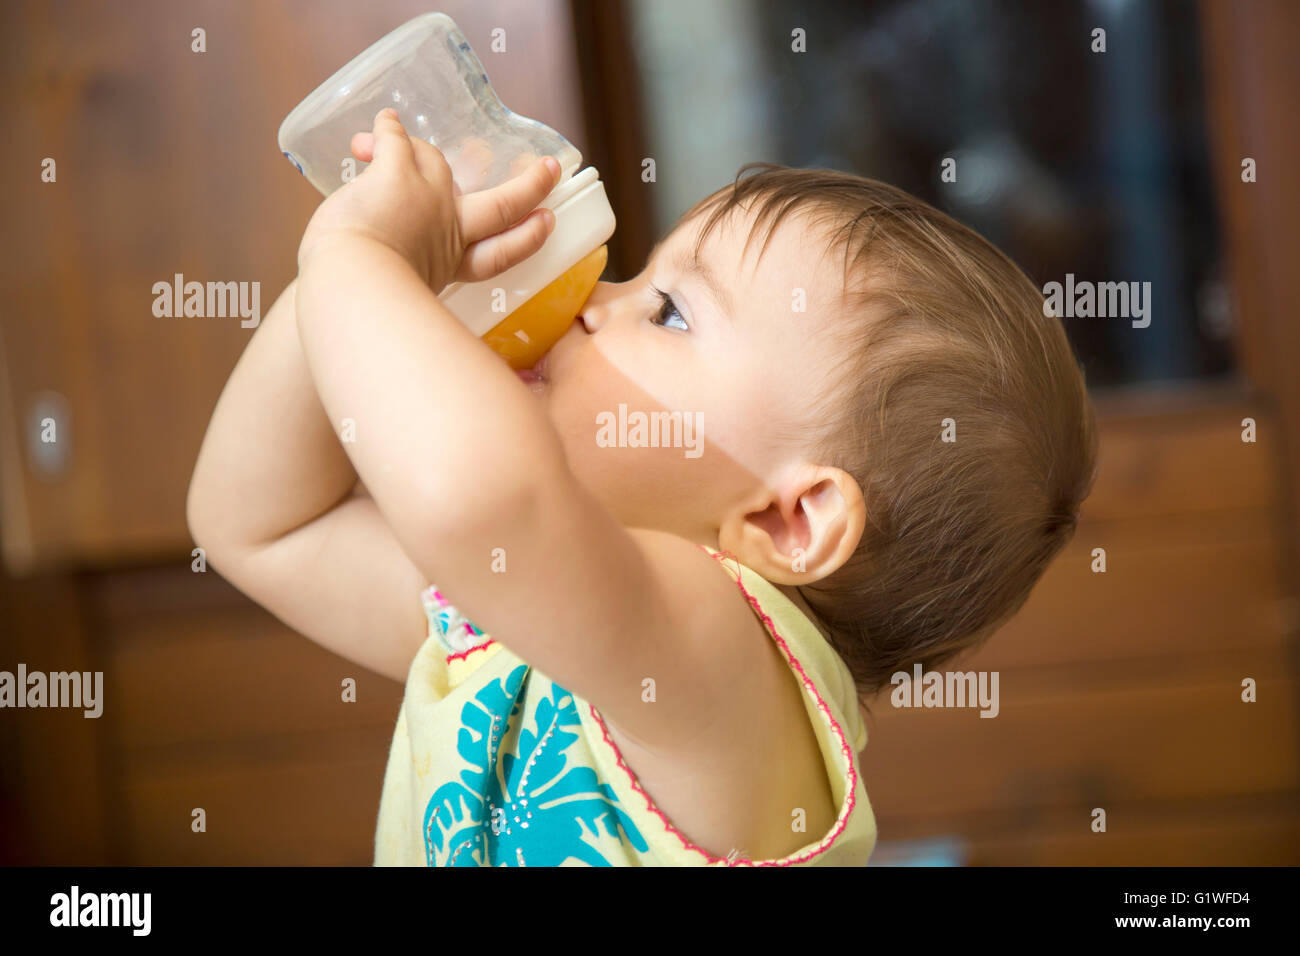 Vue latérale d'un an à partir de l'eau potable baby girl feeding bottle Banque D'Images